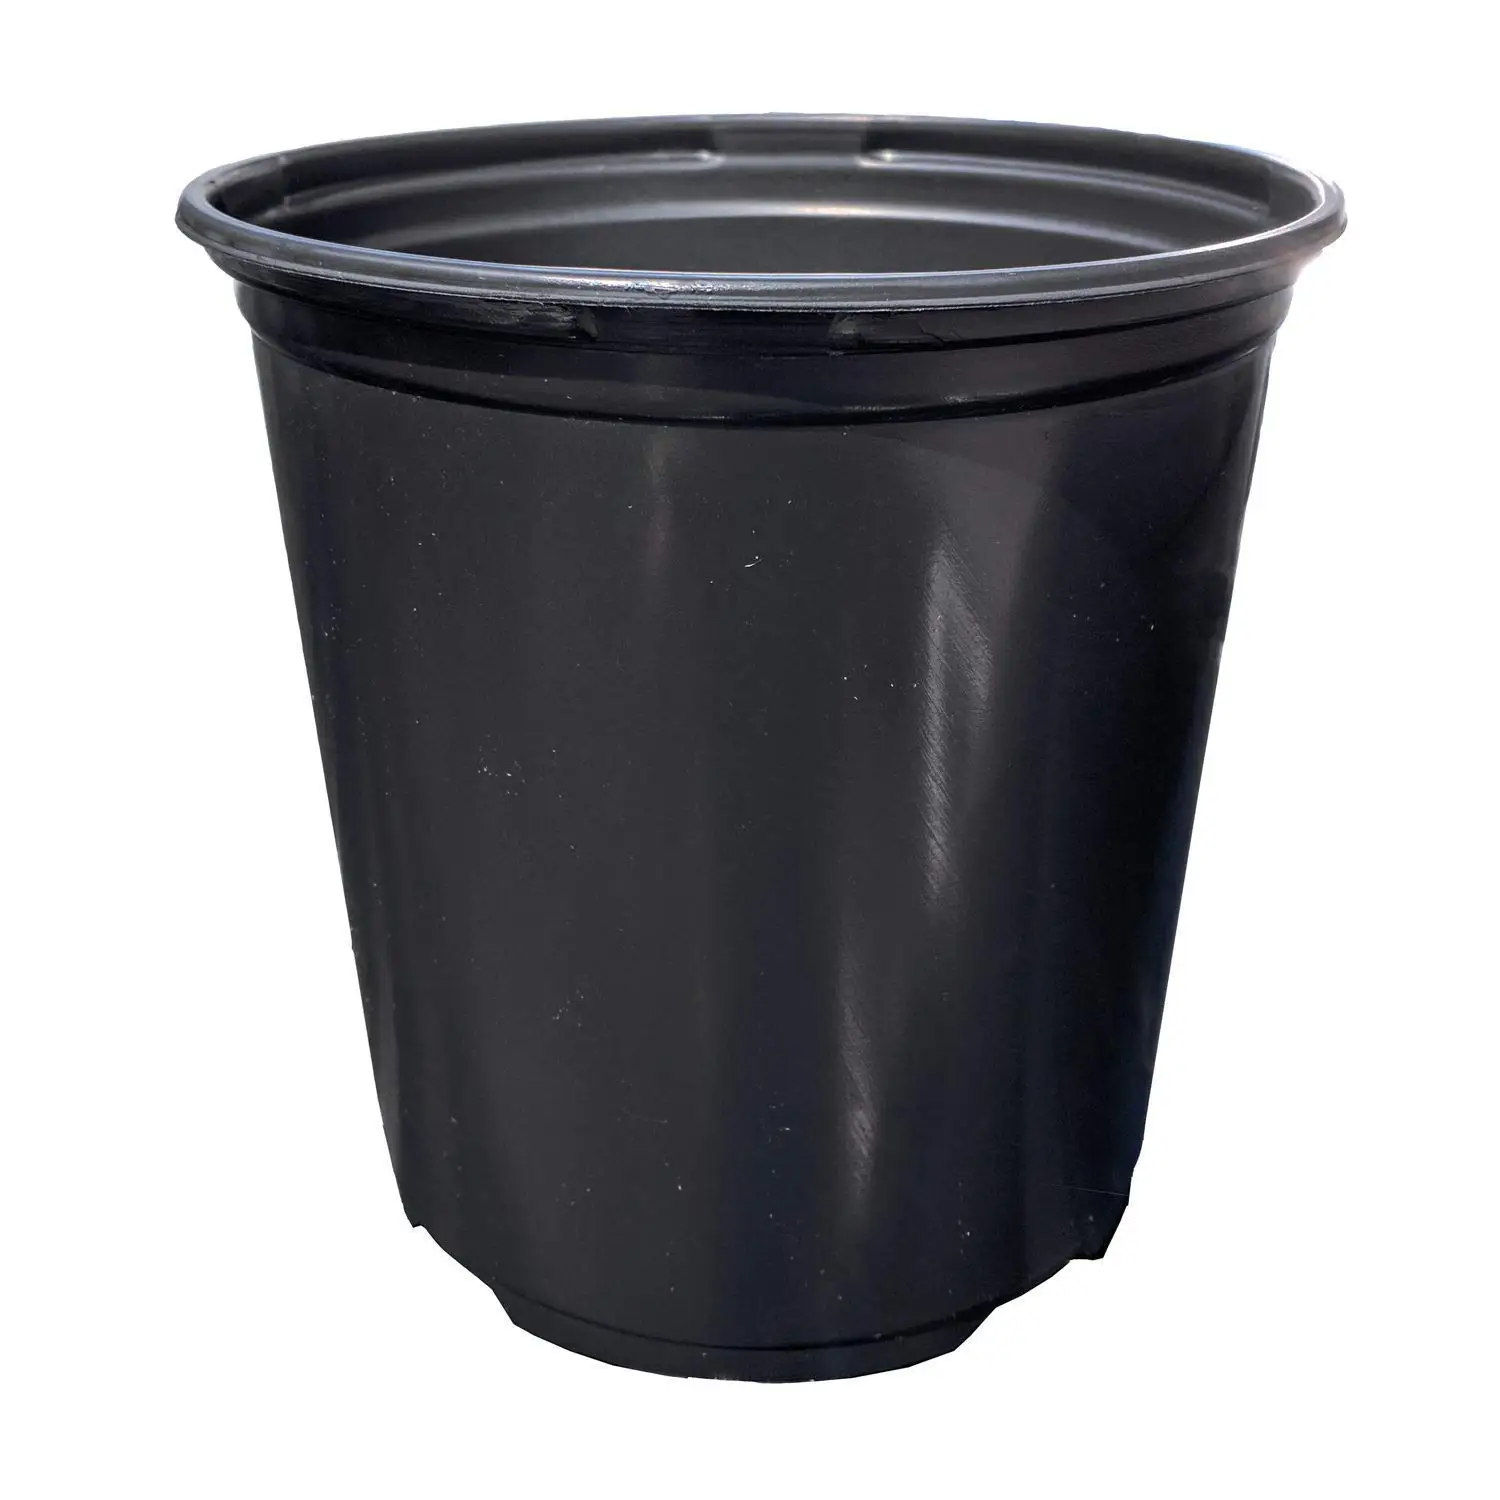 Cheap 3 Gallon Black Plastic Pots, find 3 Gallon Black